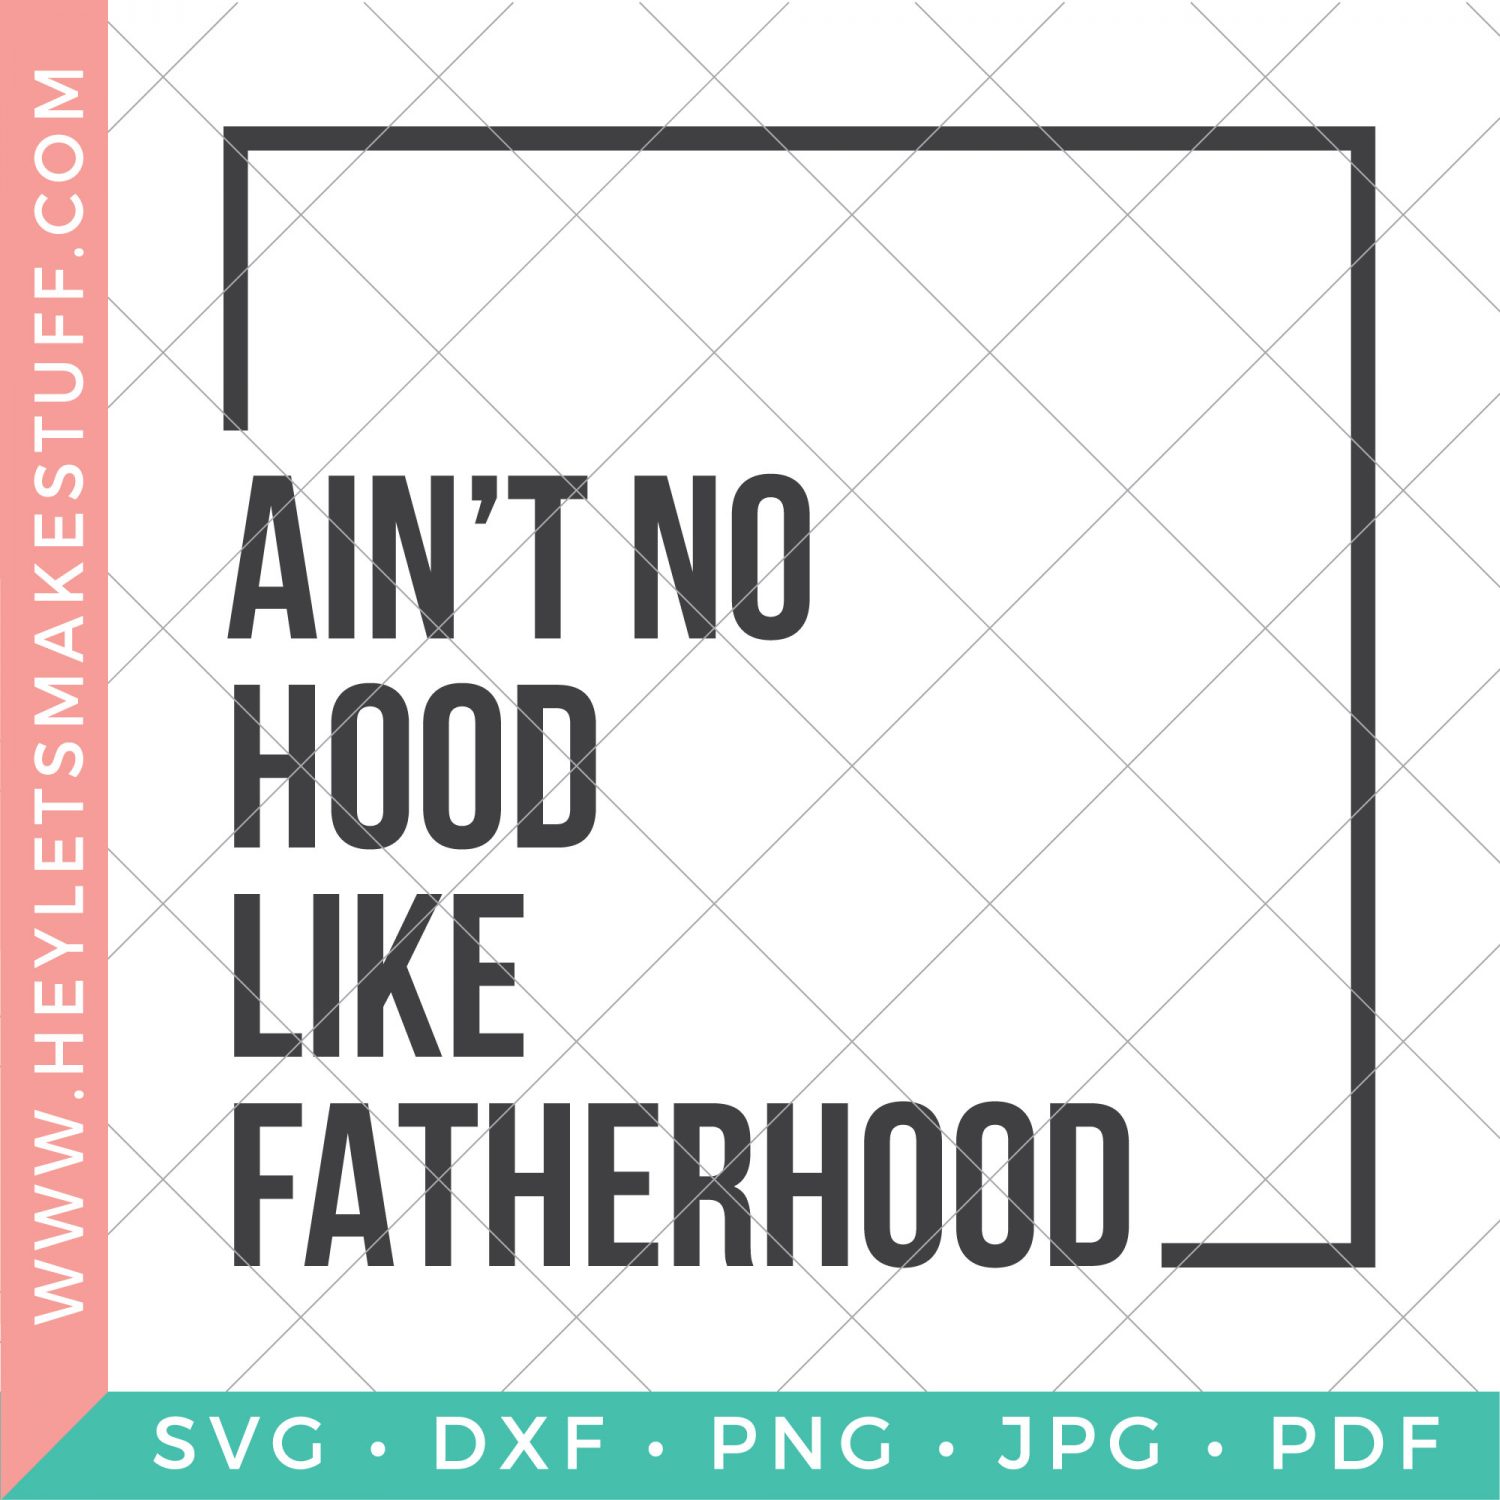 Ain't No Hood Like Fatherhood SVG